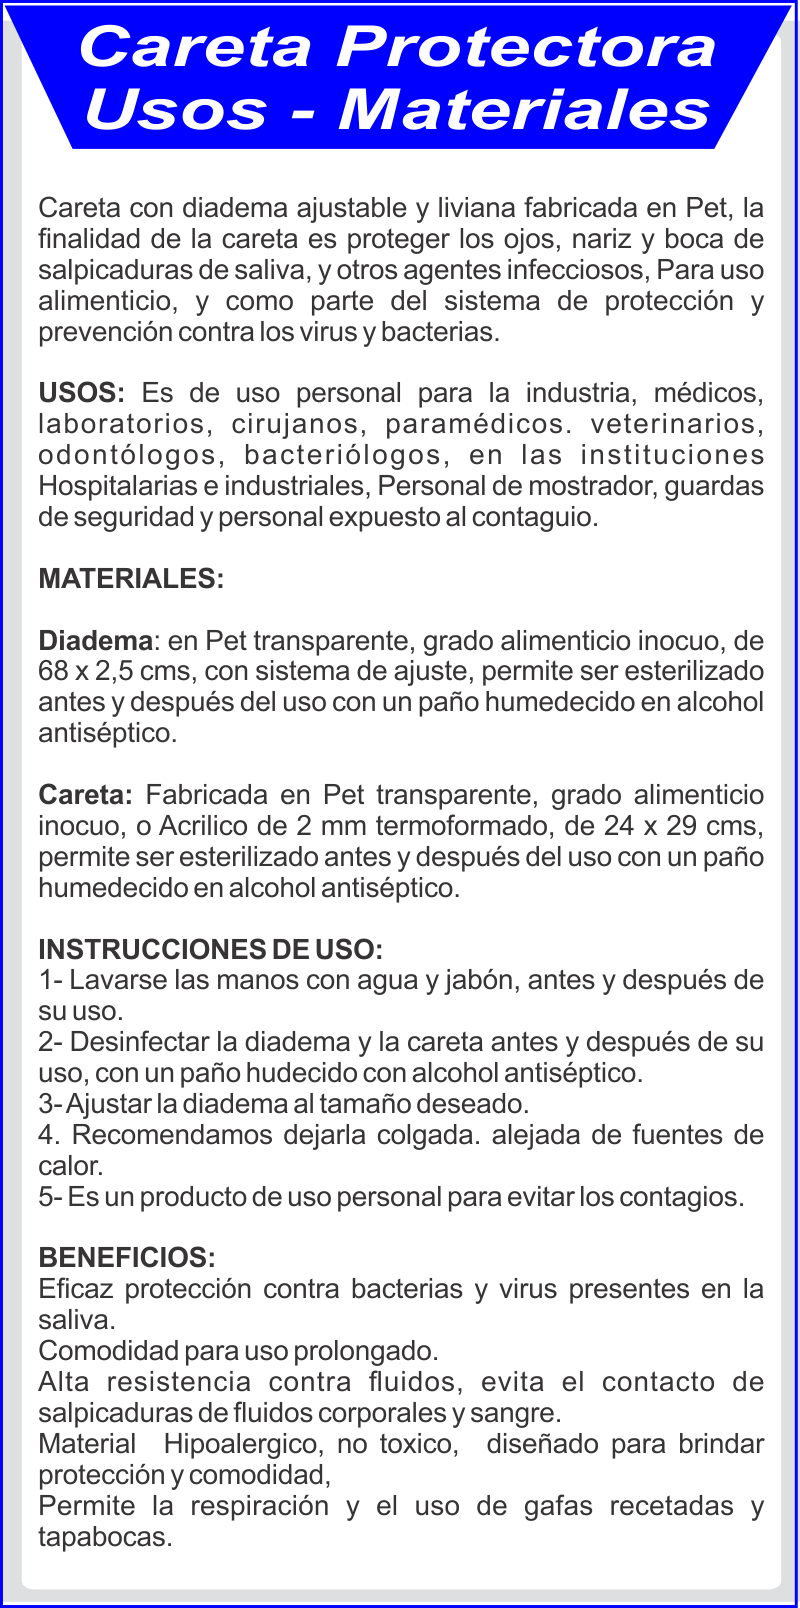 materiales para caretas protectoras contra fluidos, colombia